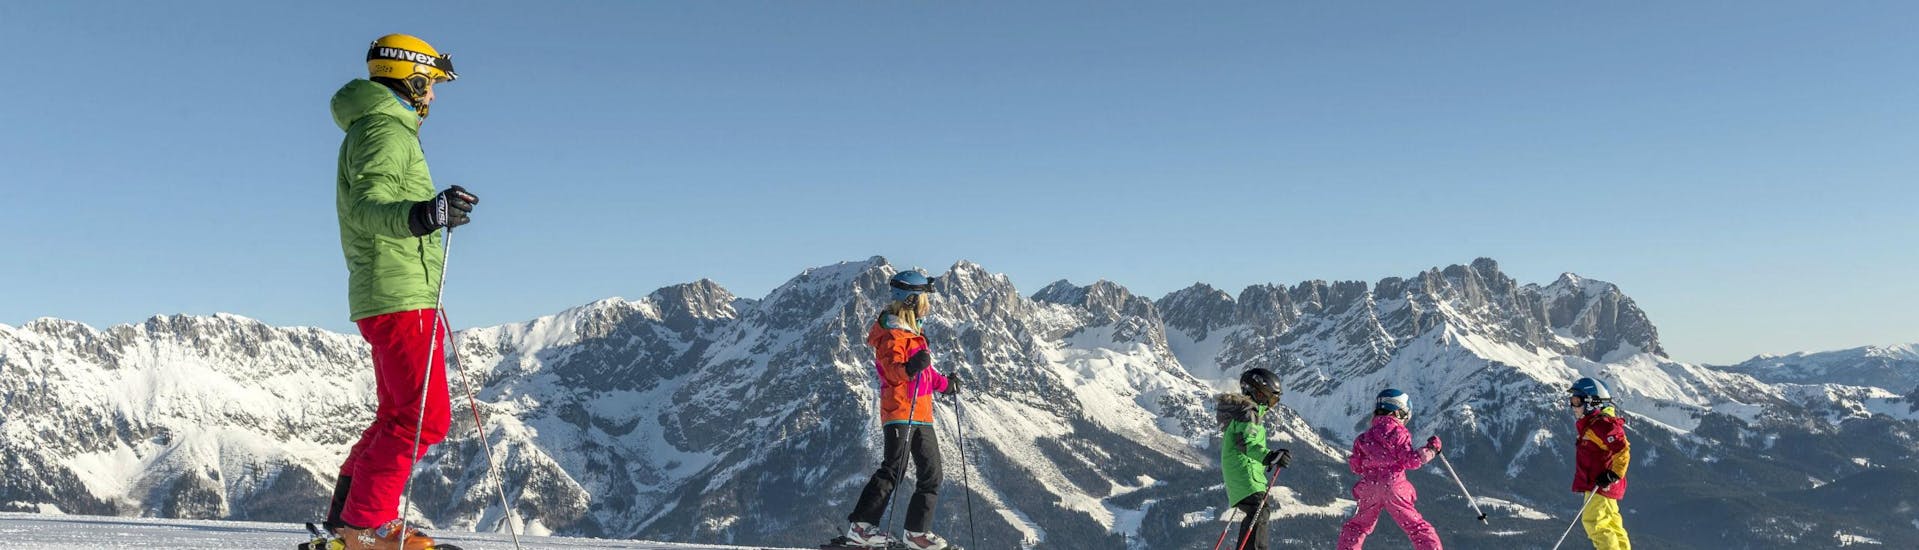 Eine Familie verbringt einen gemeinsamen Tag auf den Skipisten von Söll, wo örtliche Skischulen ihre Skikurse für all jene die das Skifahren lernen wollen durchführen.